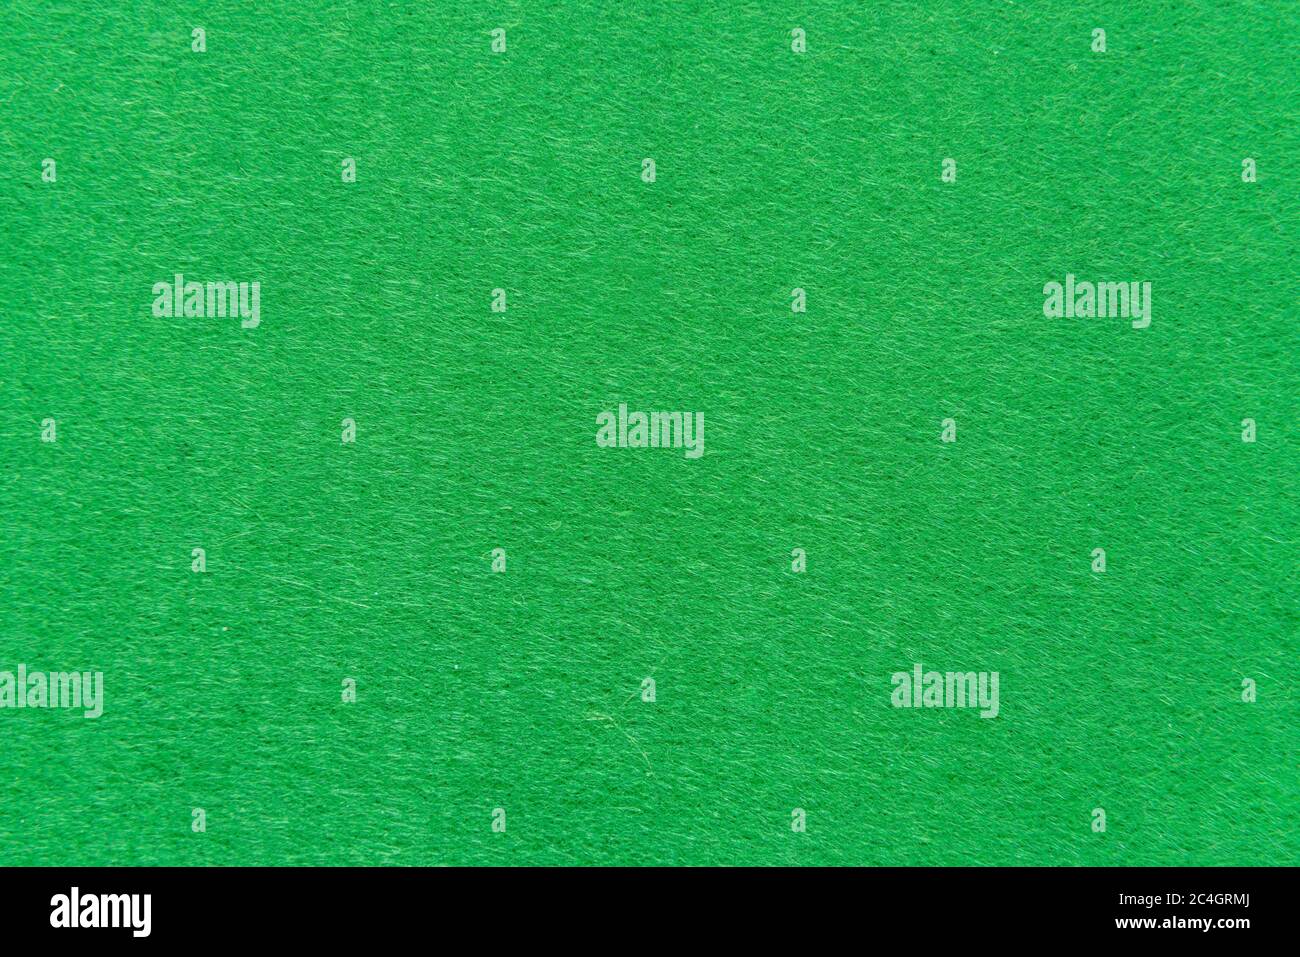 Vibrant Green Felt Surface Background, Wool Texture, Felt, Felt